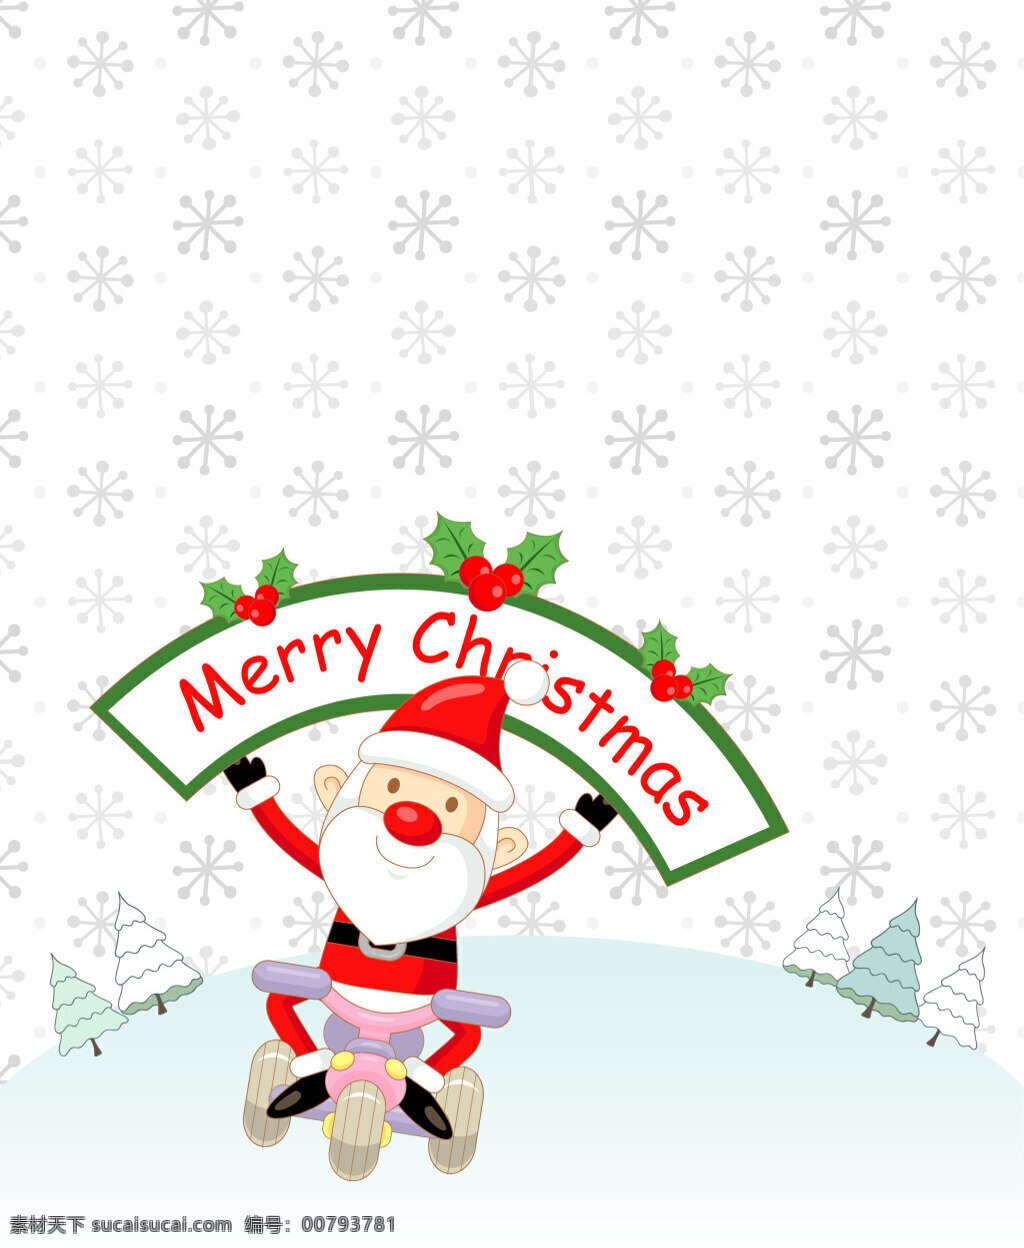 矢量 卡通 雪花 底纹 节日 背景 圣诞老人 骑车 圣诞节 海报